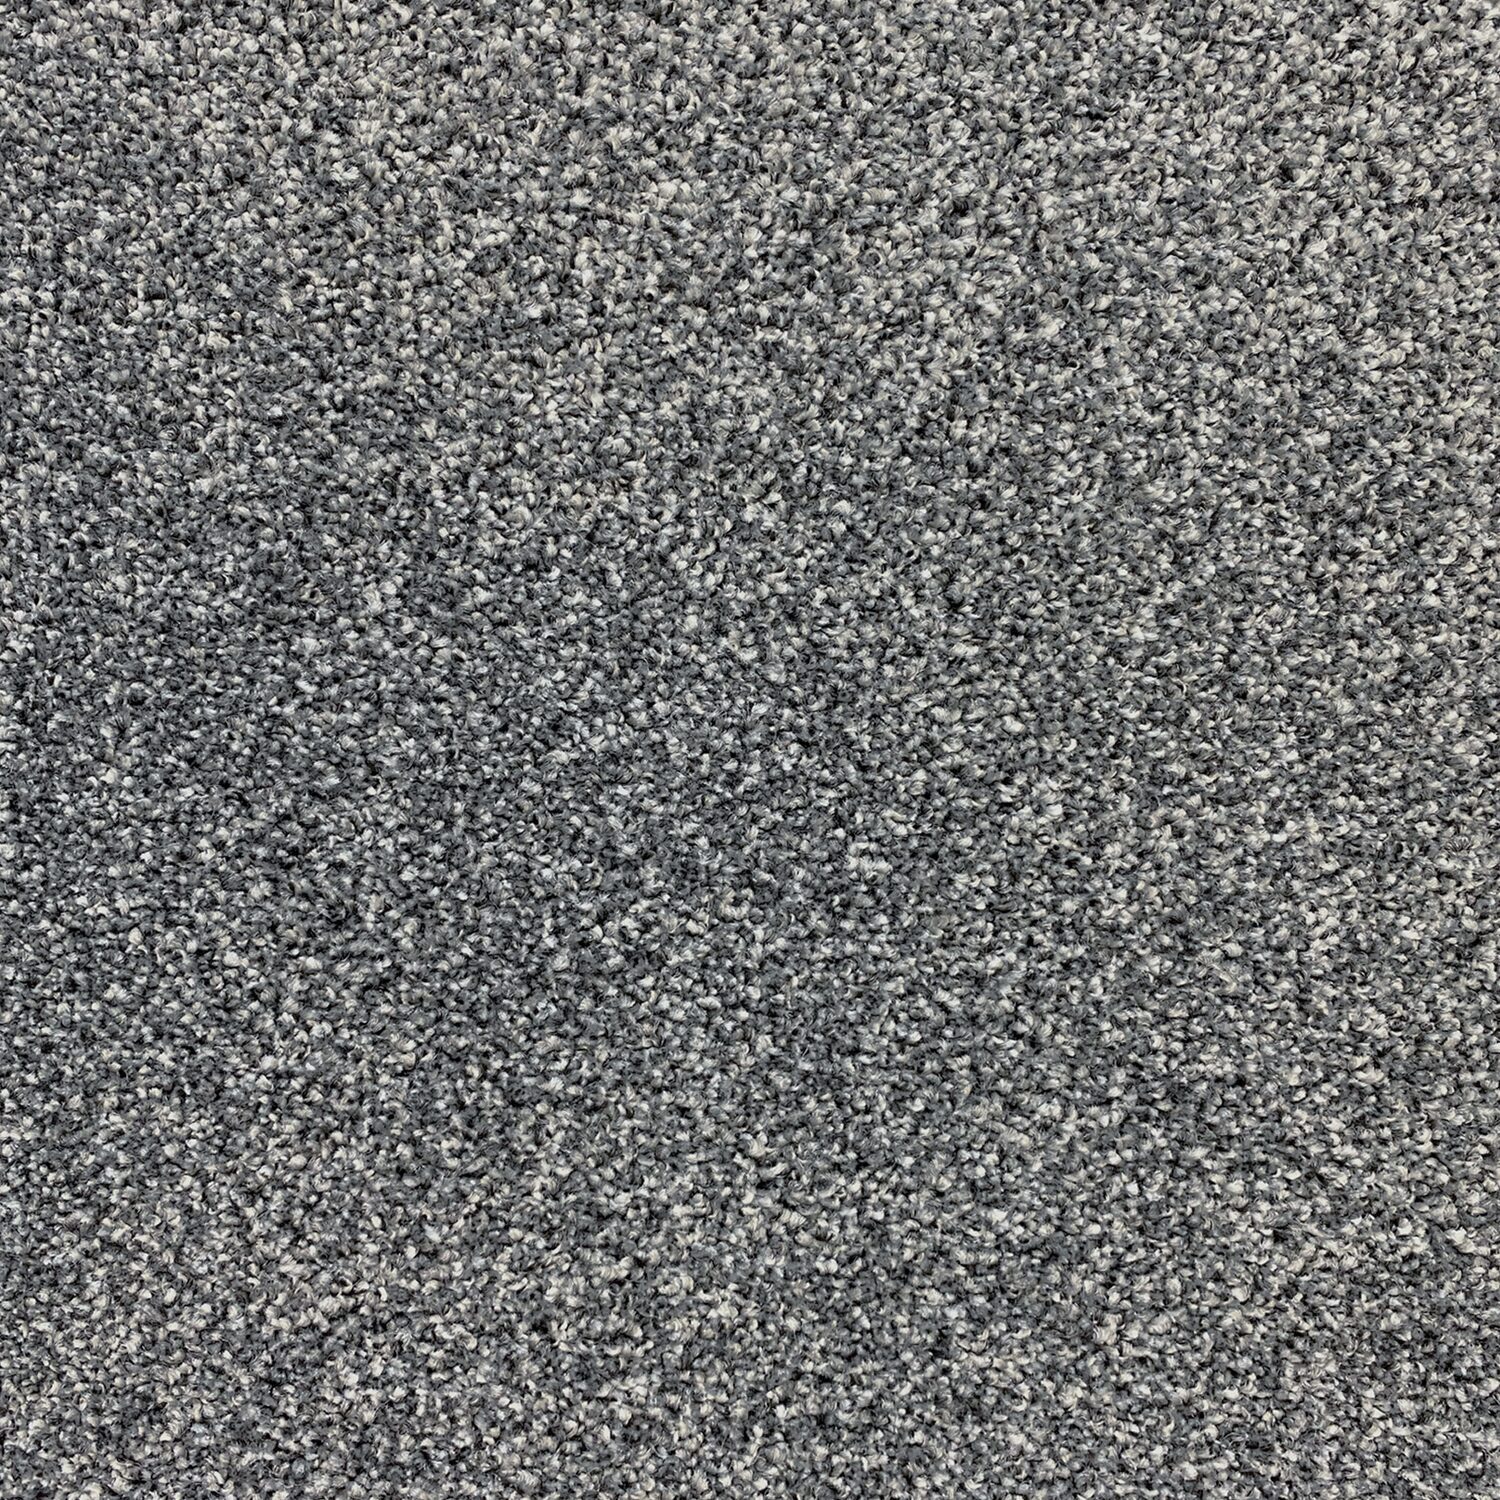 Carpet name: Smart Textures Cinder 1450